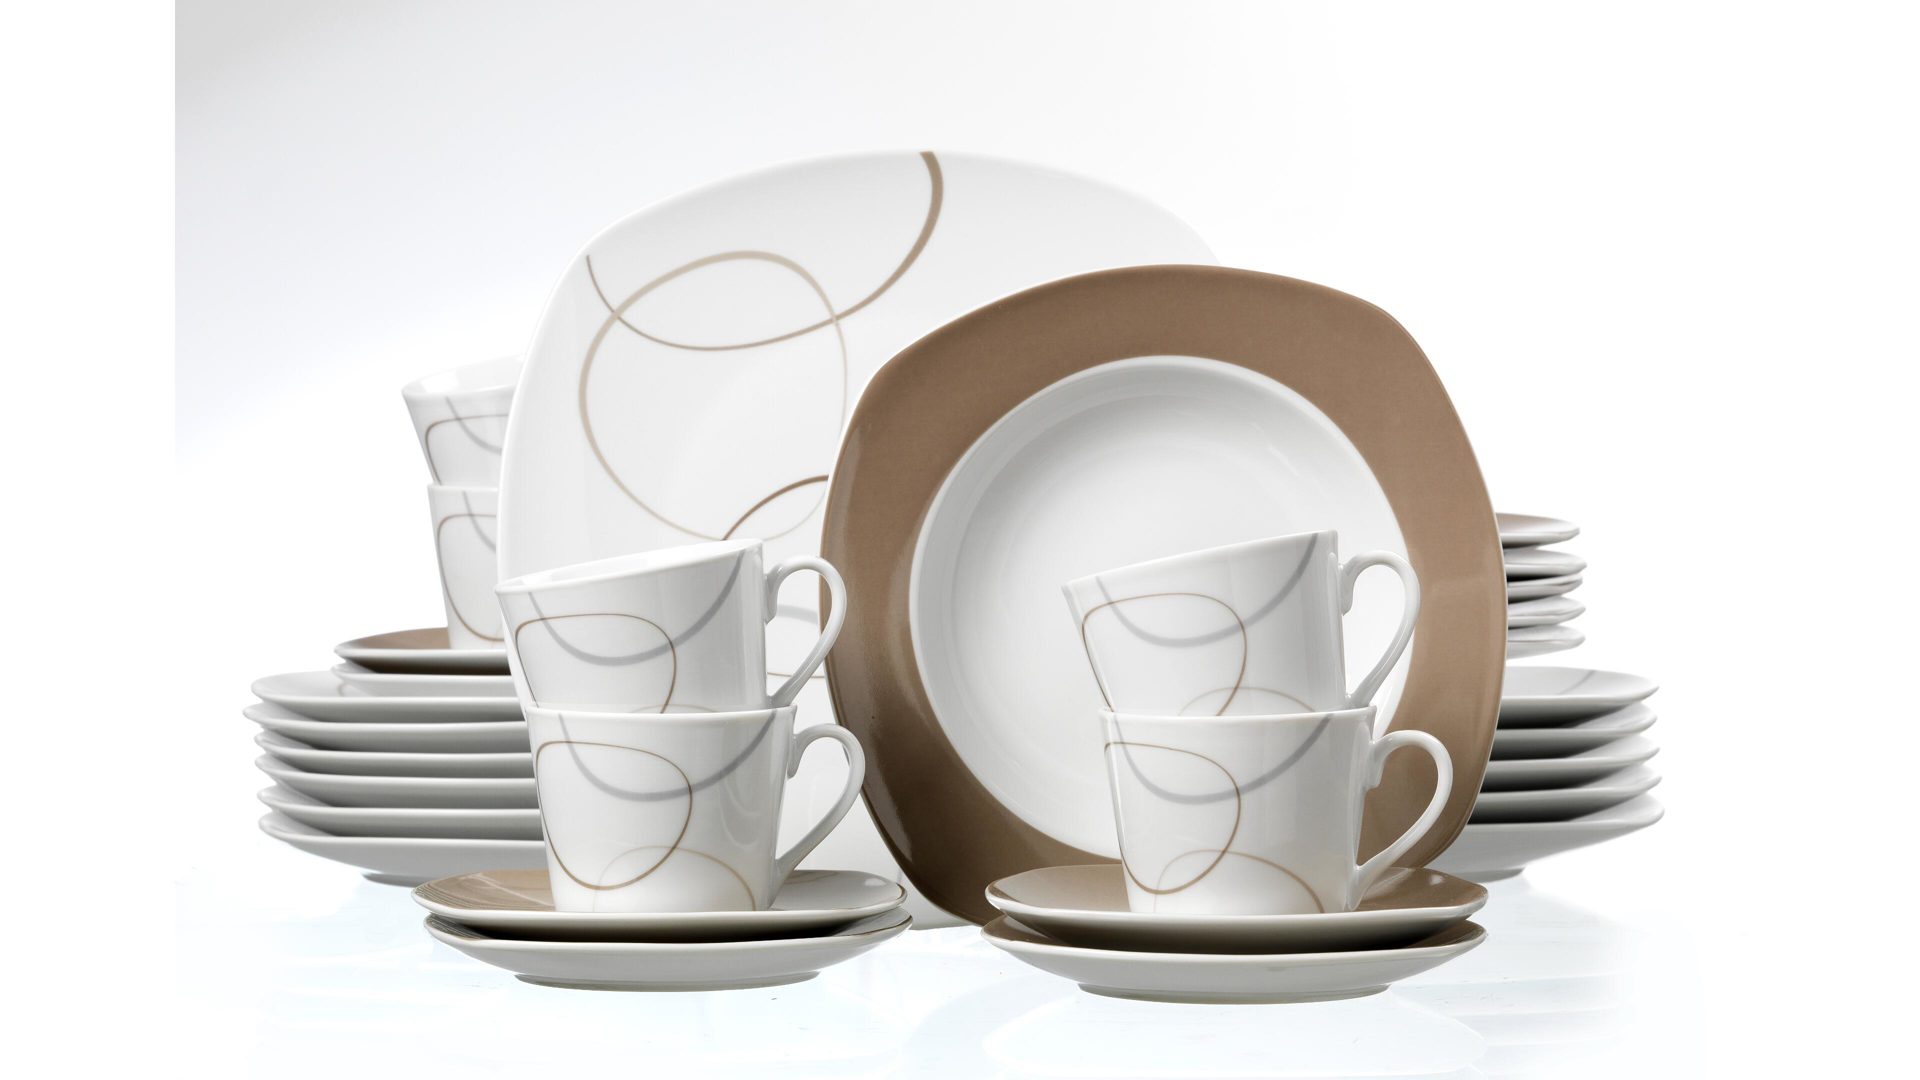 Kaffeebecher Ritzenhoff & breker aus Porzellan in Weiß Kombiservice Alina weißes Porzellan mit graphischem Dekor - 30-teilig, Kombiservice